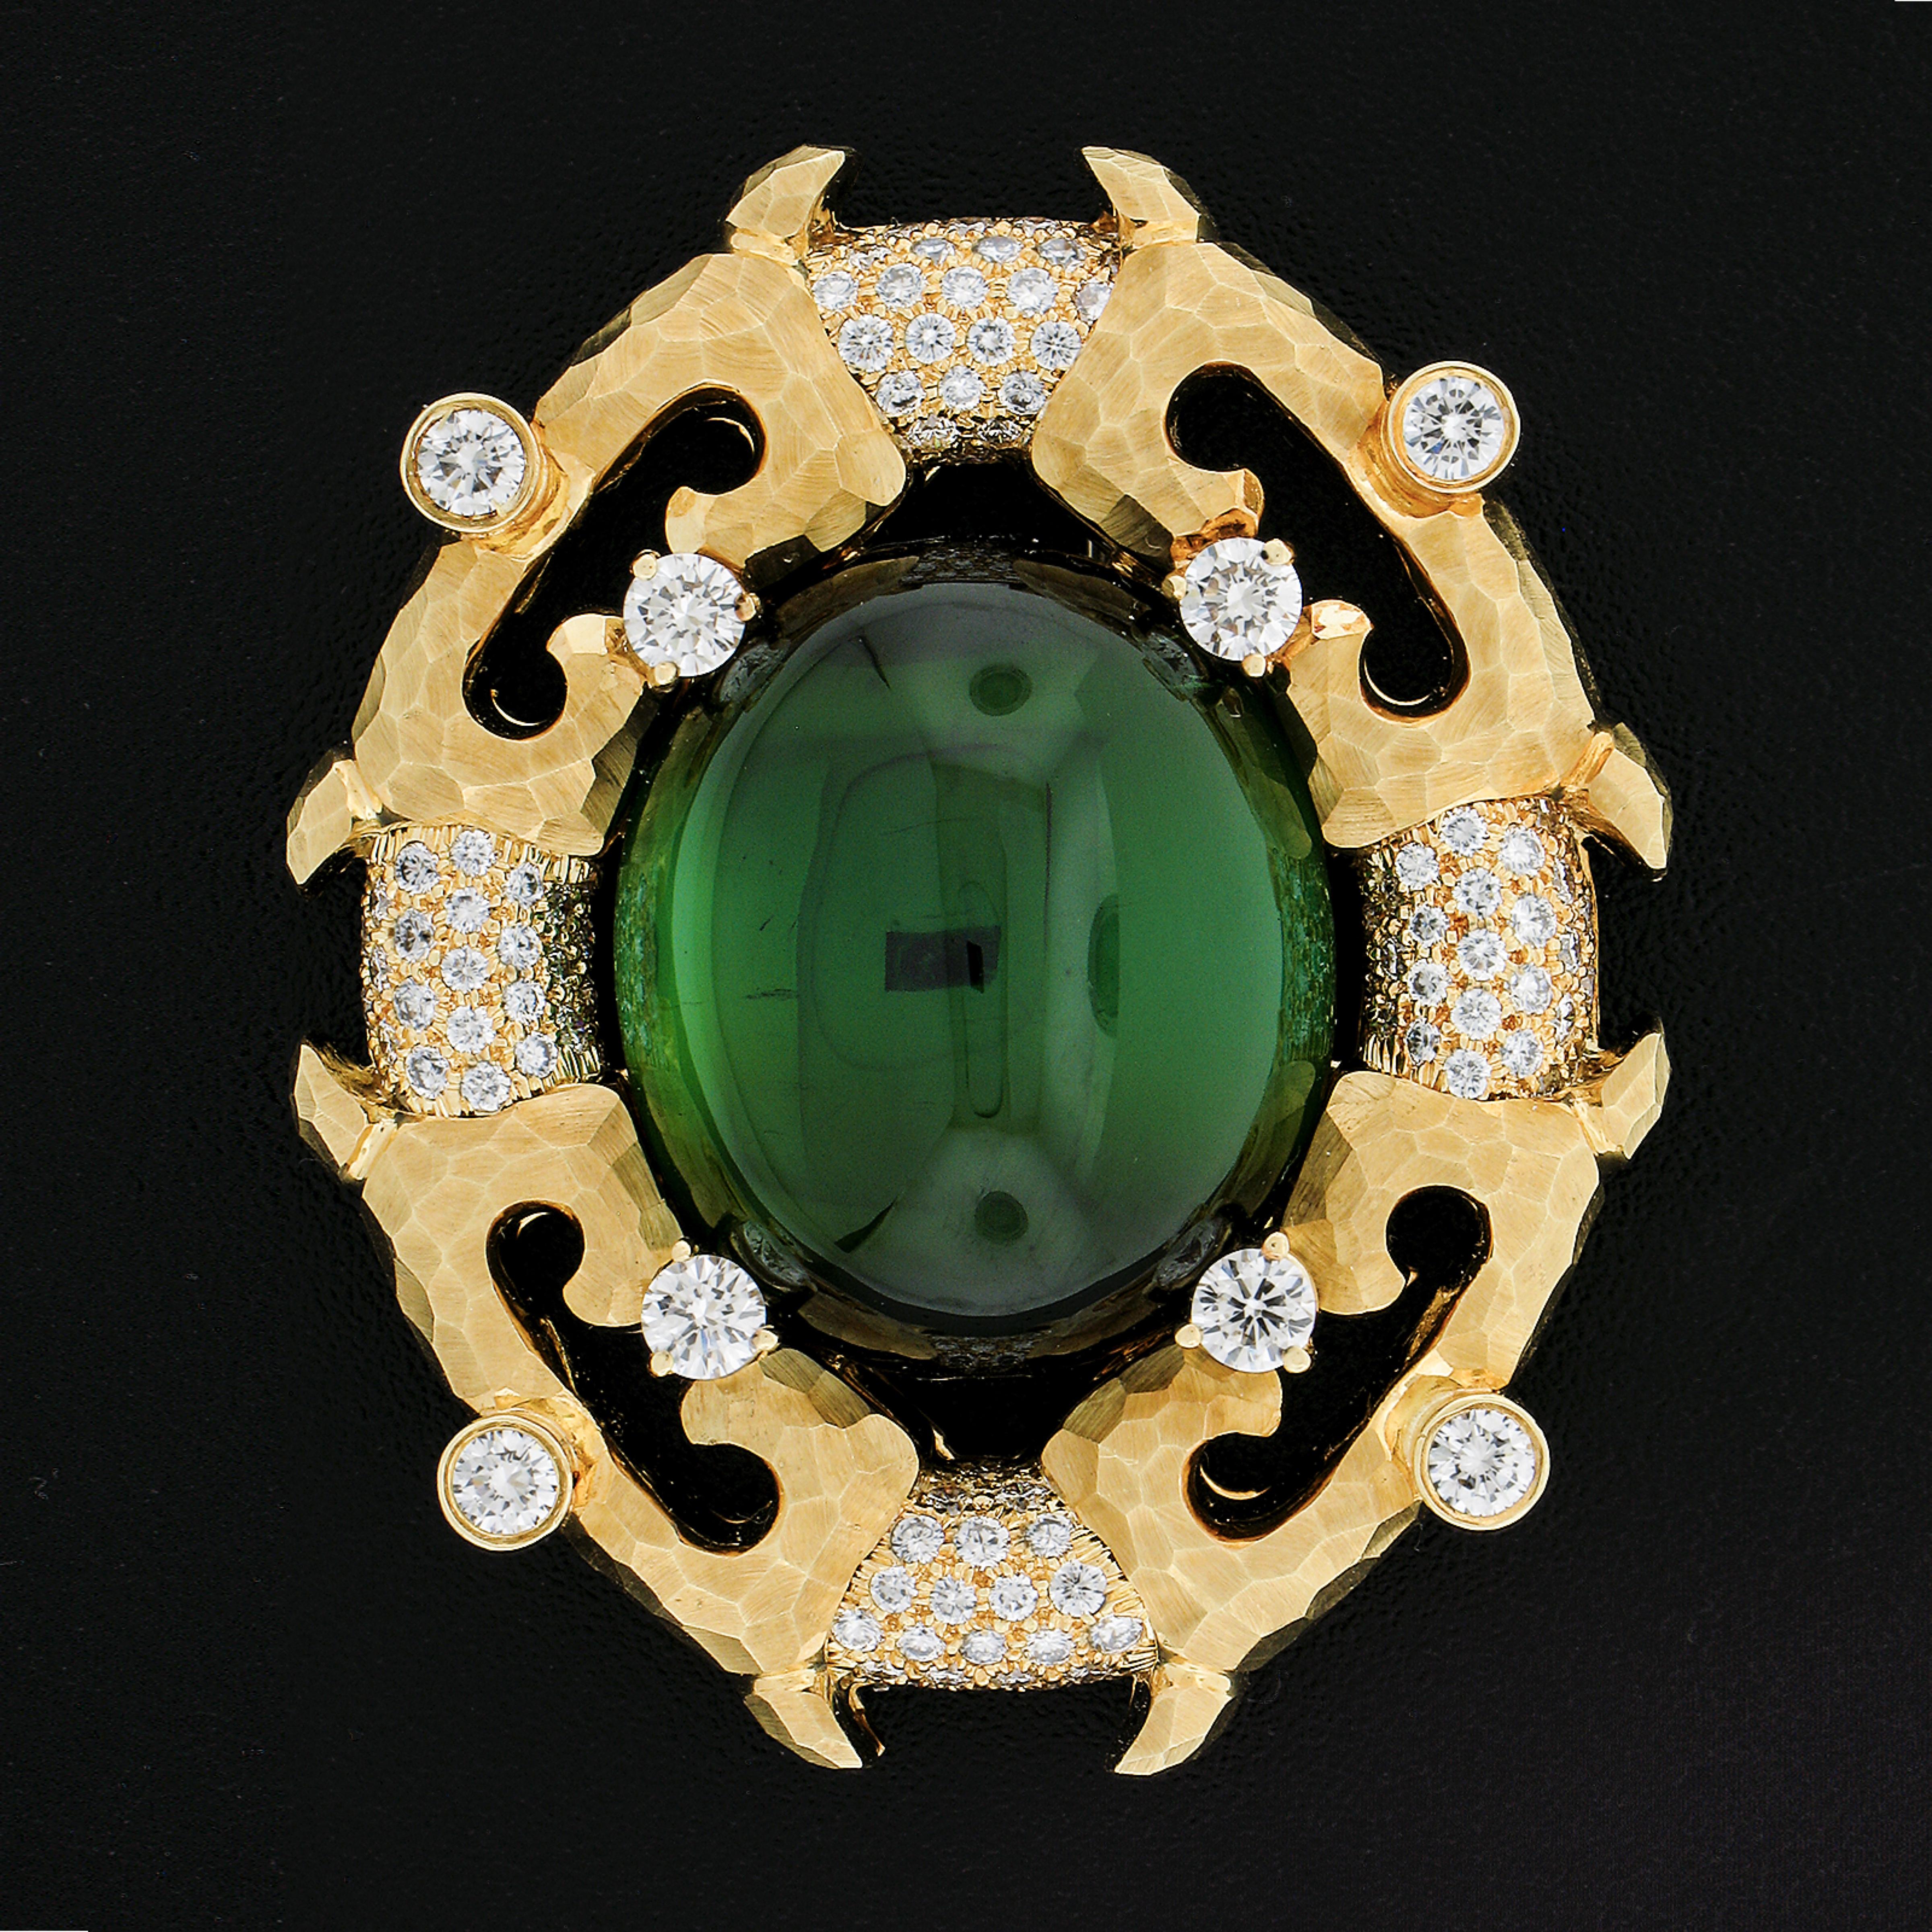 Henry Dunay est réputé pour la qualité de ses pierres précieuses, de ses diamants et de ses finitions en or. C'est tout cela que l'on retrouve dans cette magnifique œuvre d'art. La tourmaline verte centrale est propre et de couleur vive. Il est